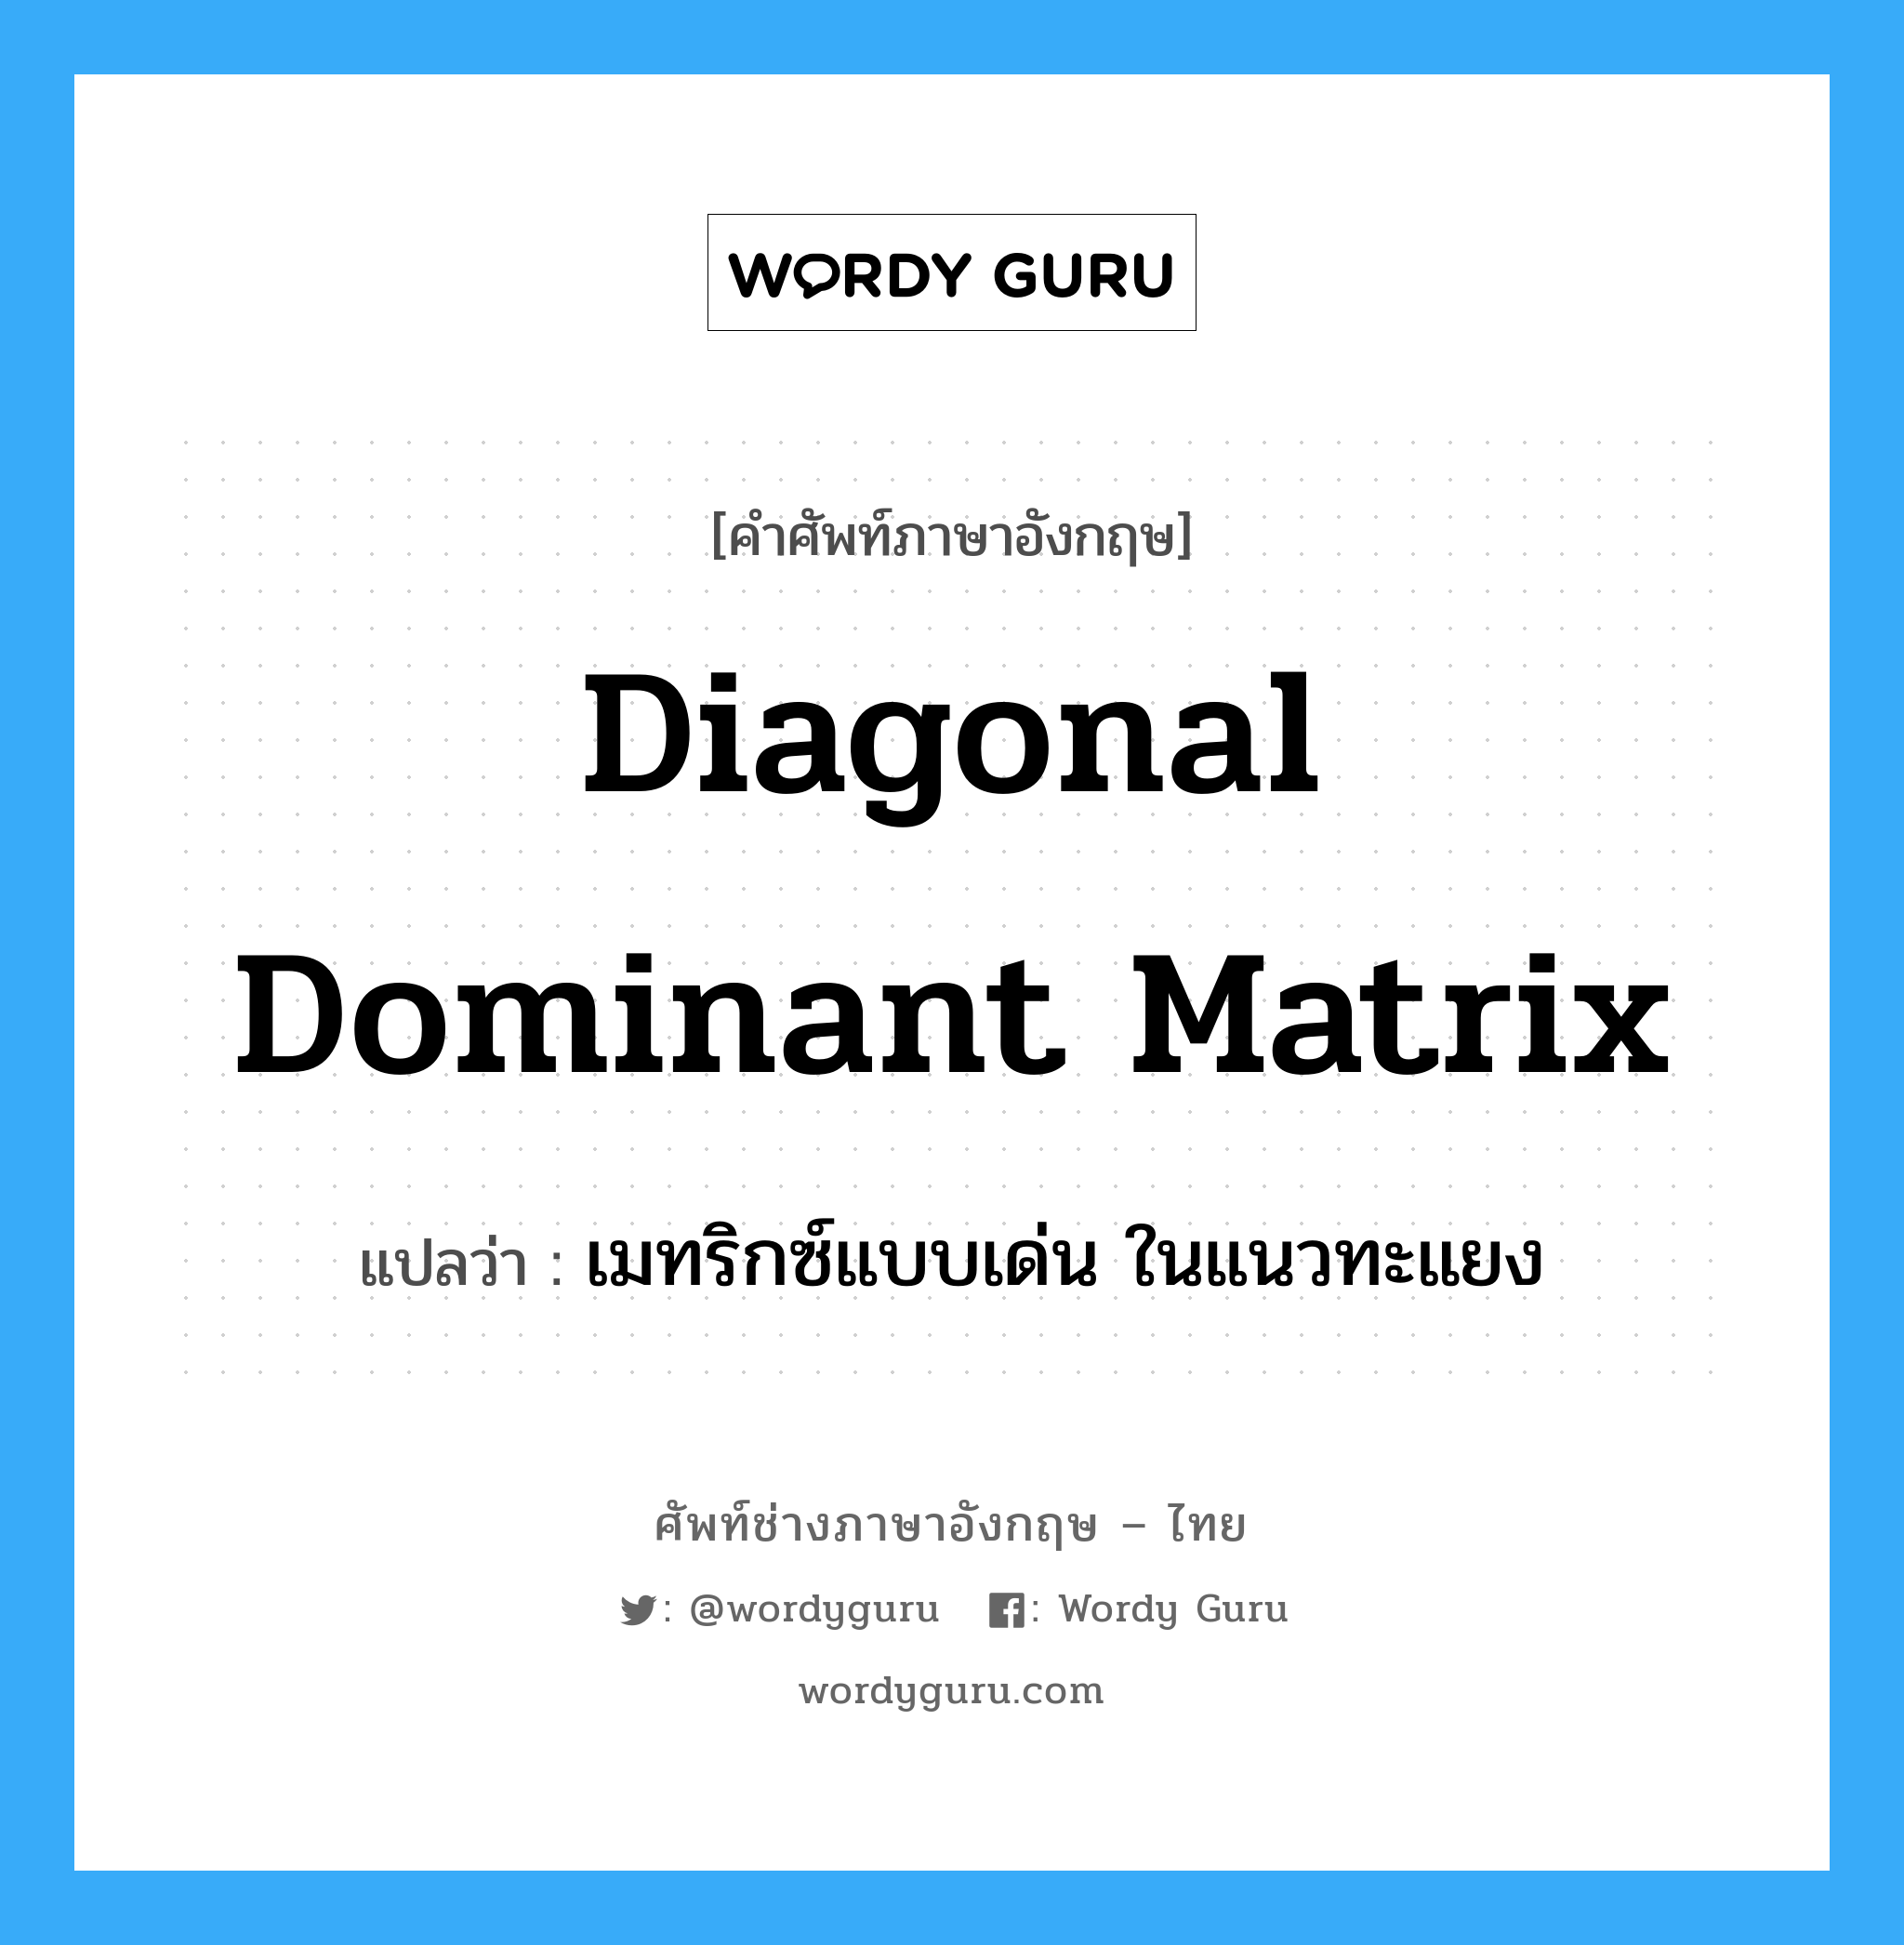 เมทริกซ์แบบเด่น ในแนวทะแยง ภาษาอังกฤษ?, คำศัพท์ช่างภาษาอังกฤษ - ไทย เมทริกซ์แบบเด่น ในแนวทะแยง คำศัพท์ภาษาอังกฤษ เมทริกซ์แบบเด่น ในแนวทะแยง แปลว่า Diagonal Dominant Matrix